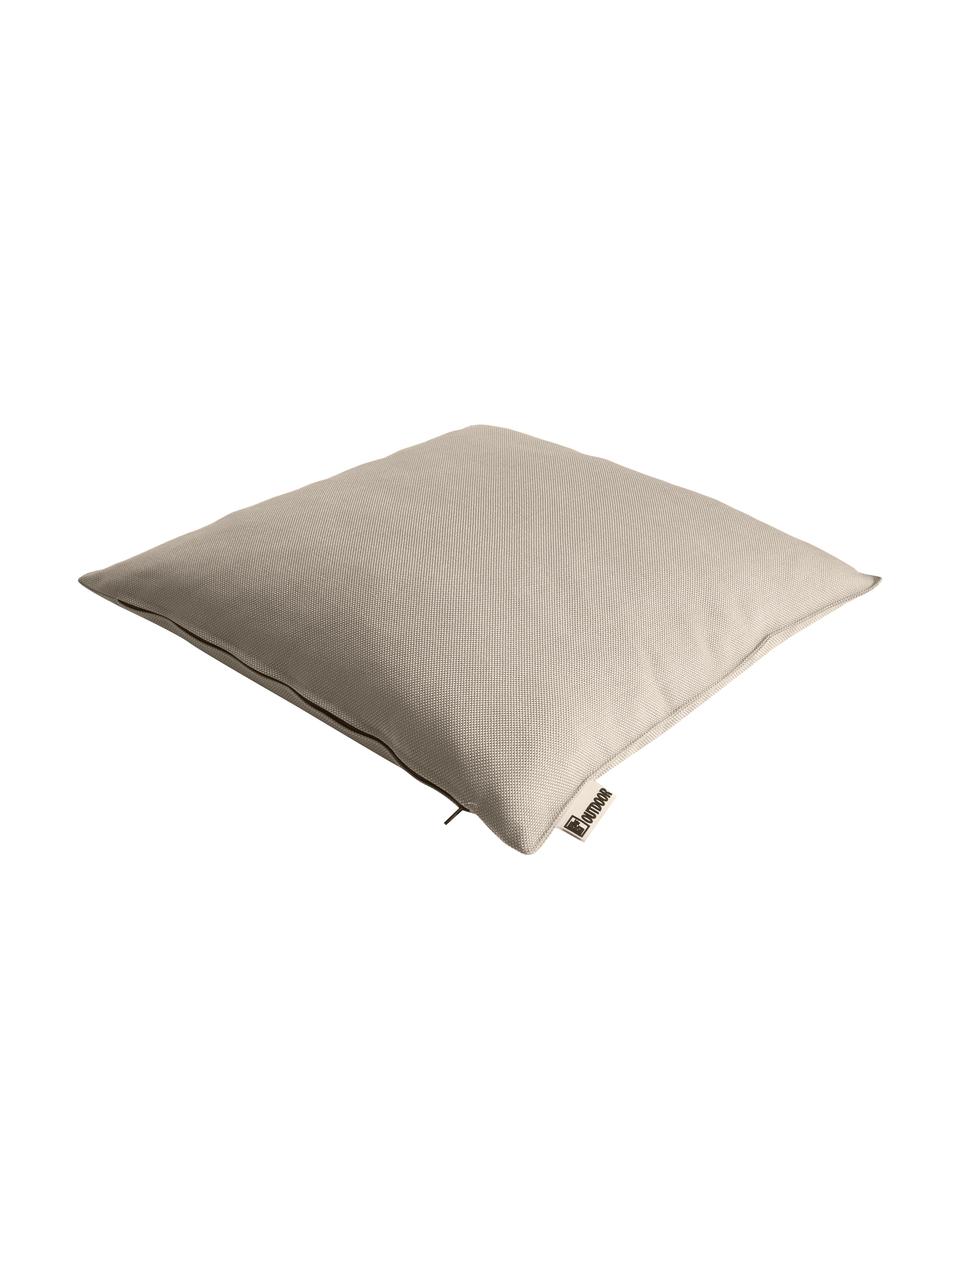 Zewnętrzna poduszka Olef, 100% bawełna, Beżowy, S 45 x D 45 cm